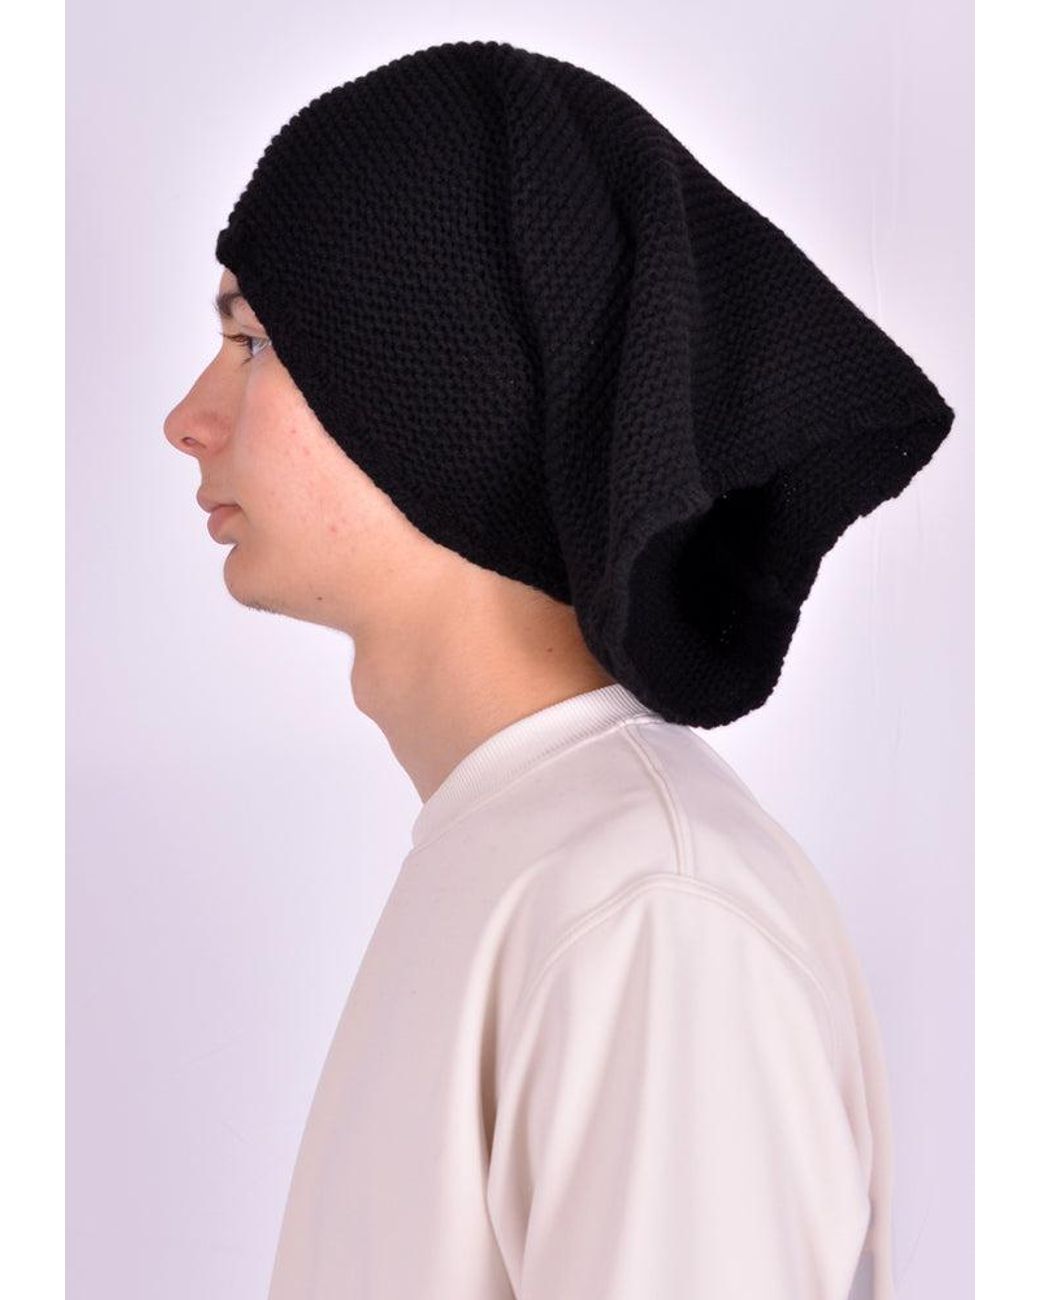 DOSHABURI Cashmere Werkstatt München M8081 Knit Beanie Cap Groove Bee Black Womens Accessories Hats 